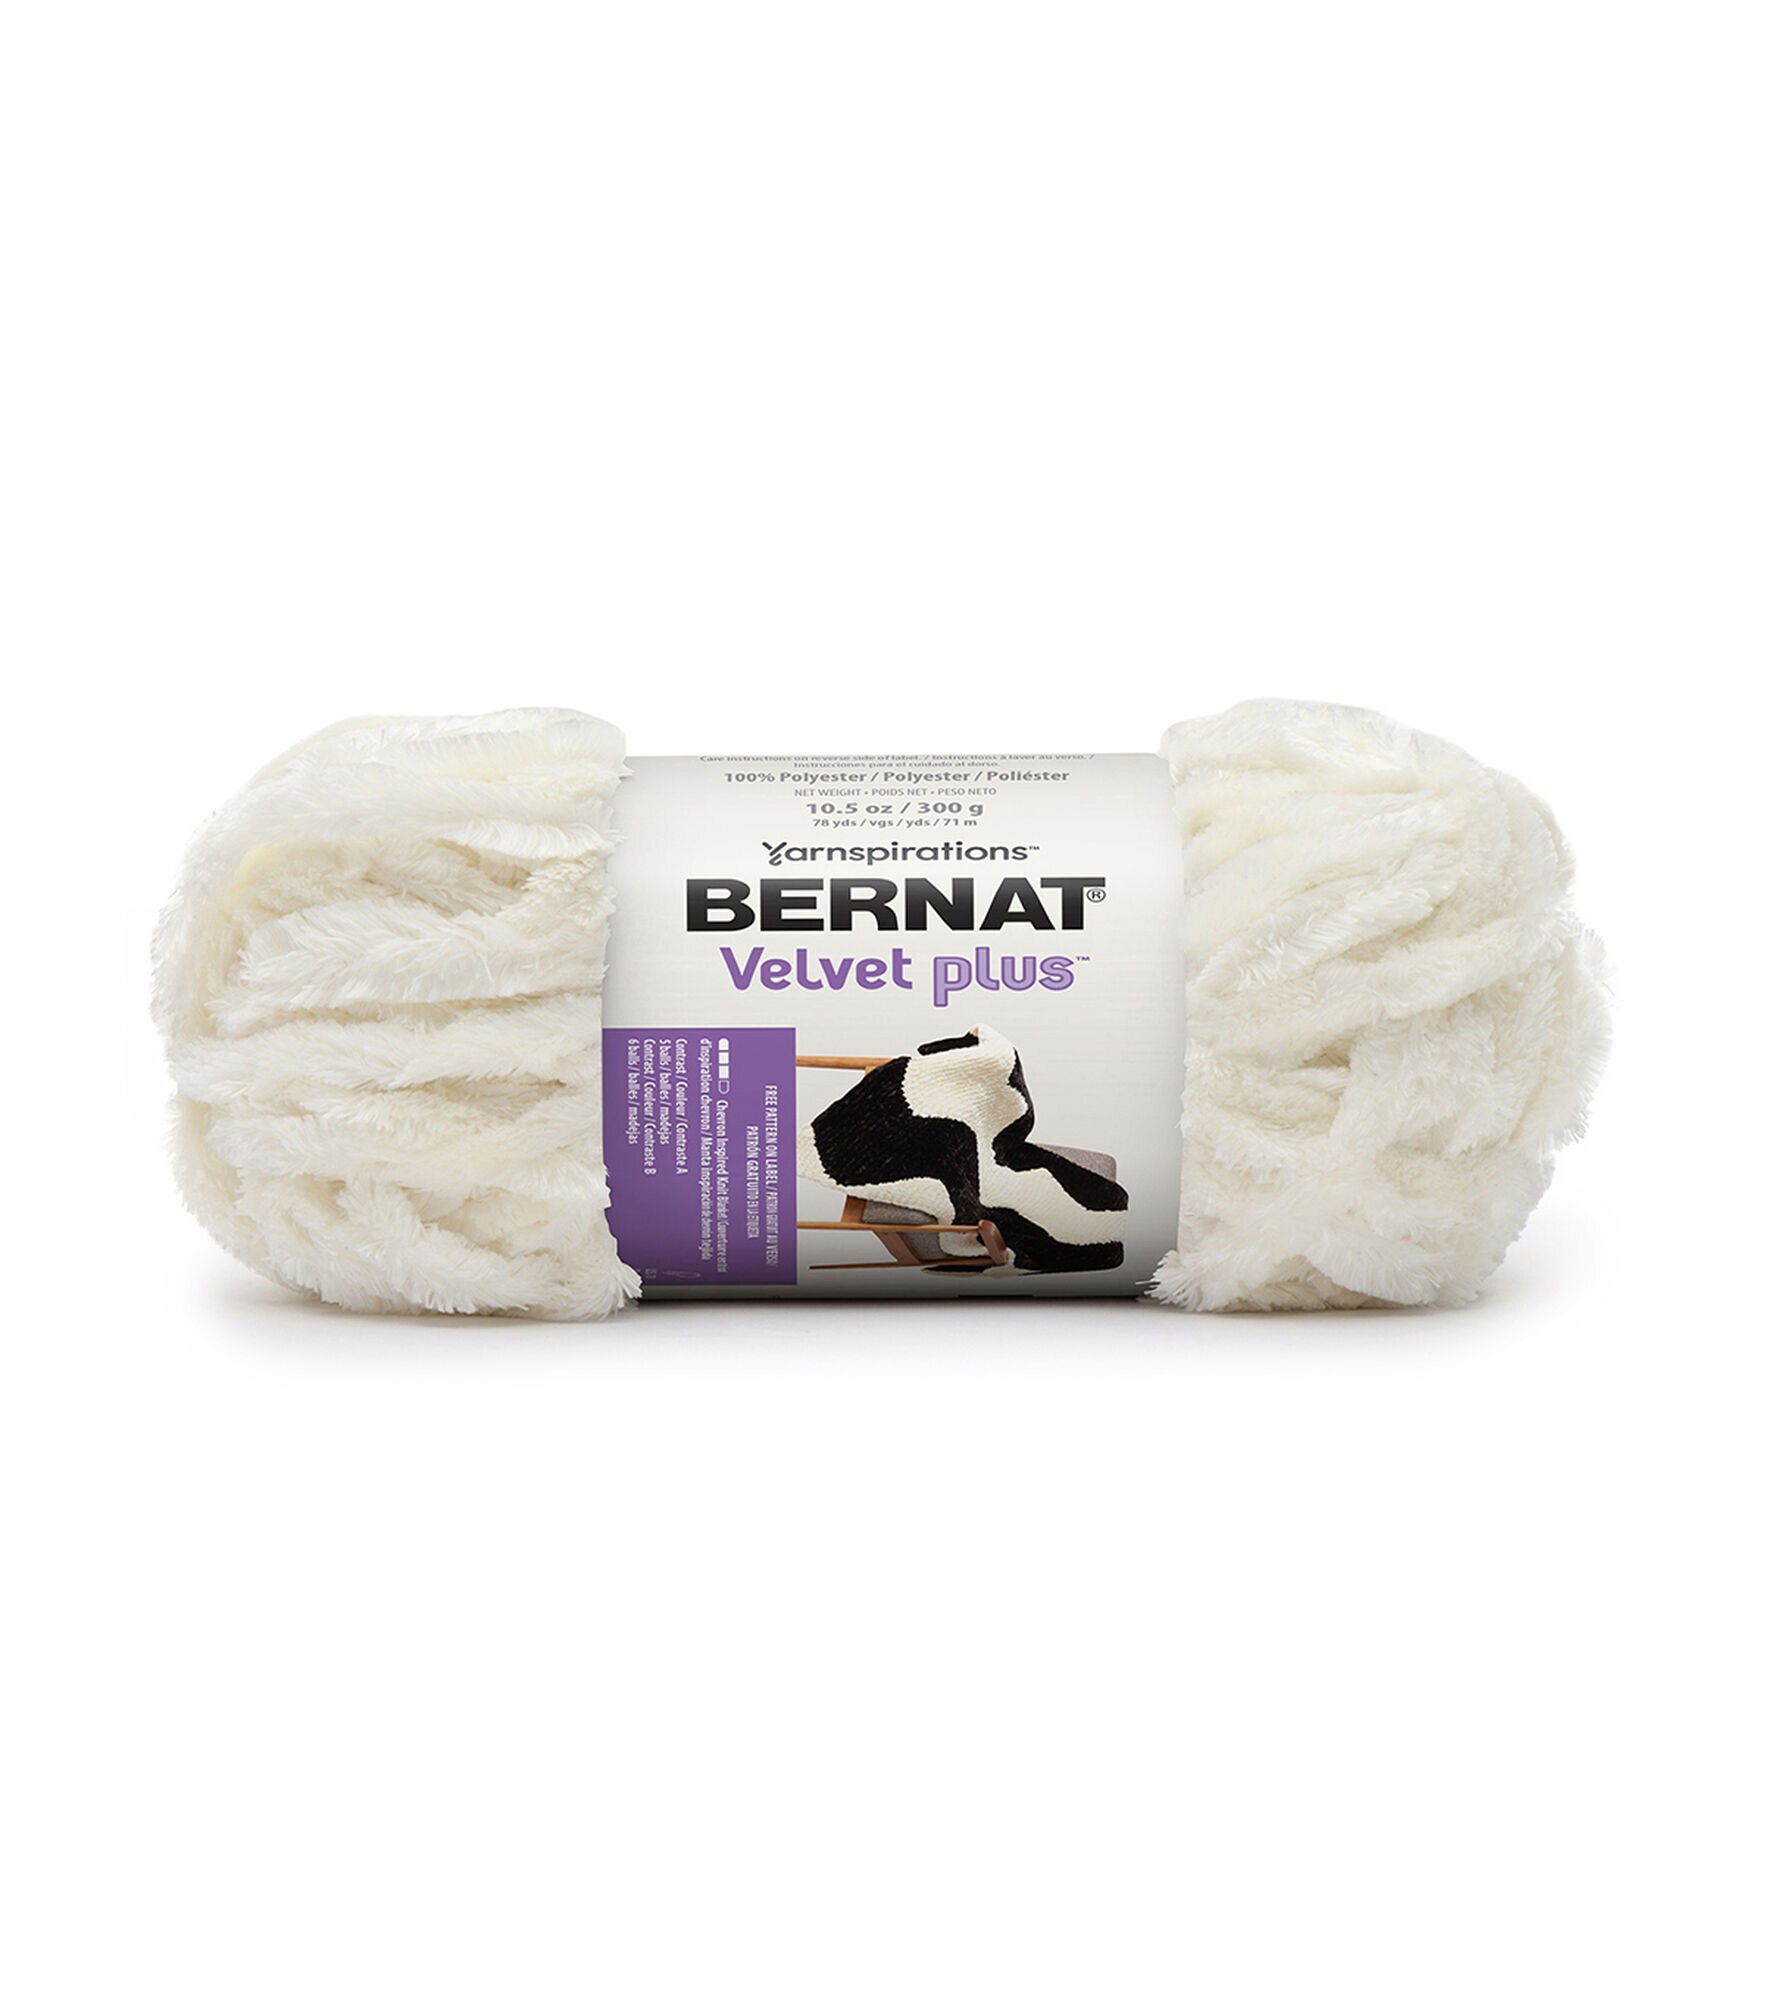 Bernat Velvet Plus Yarn-Vapor Gray, 1 count - Ralphs